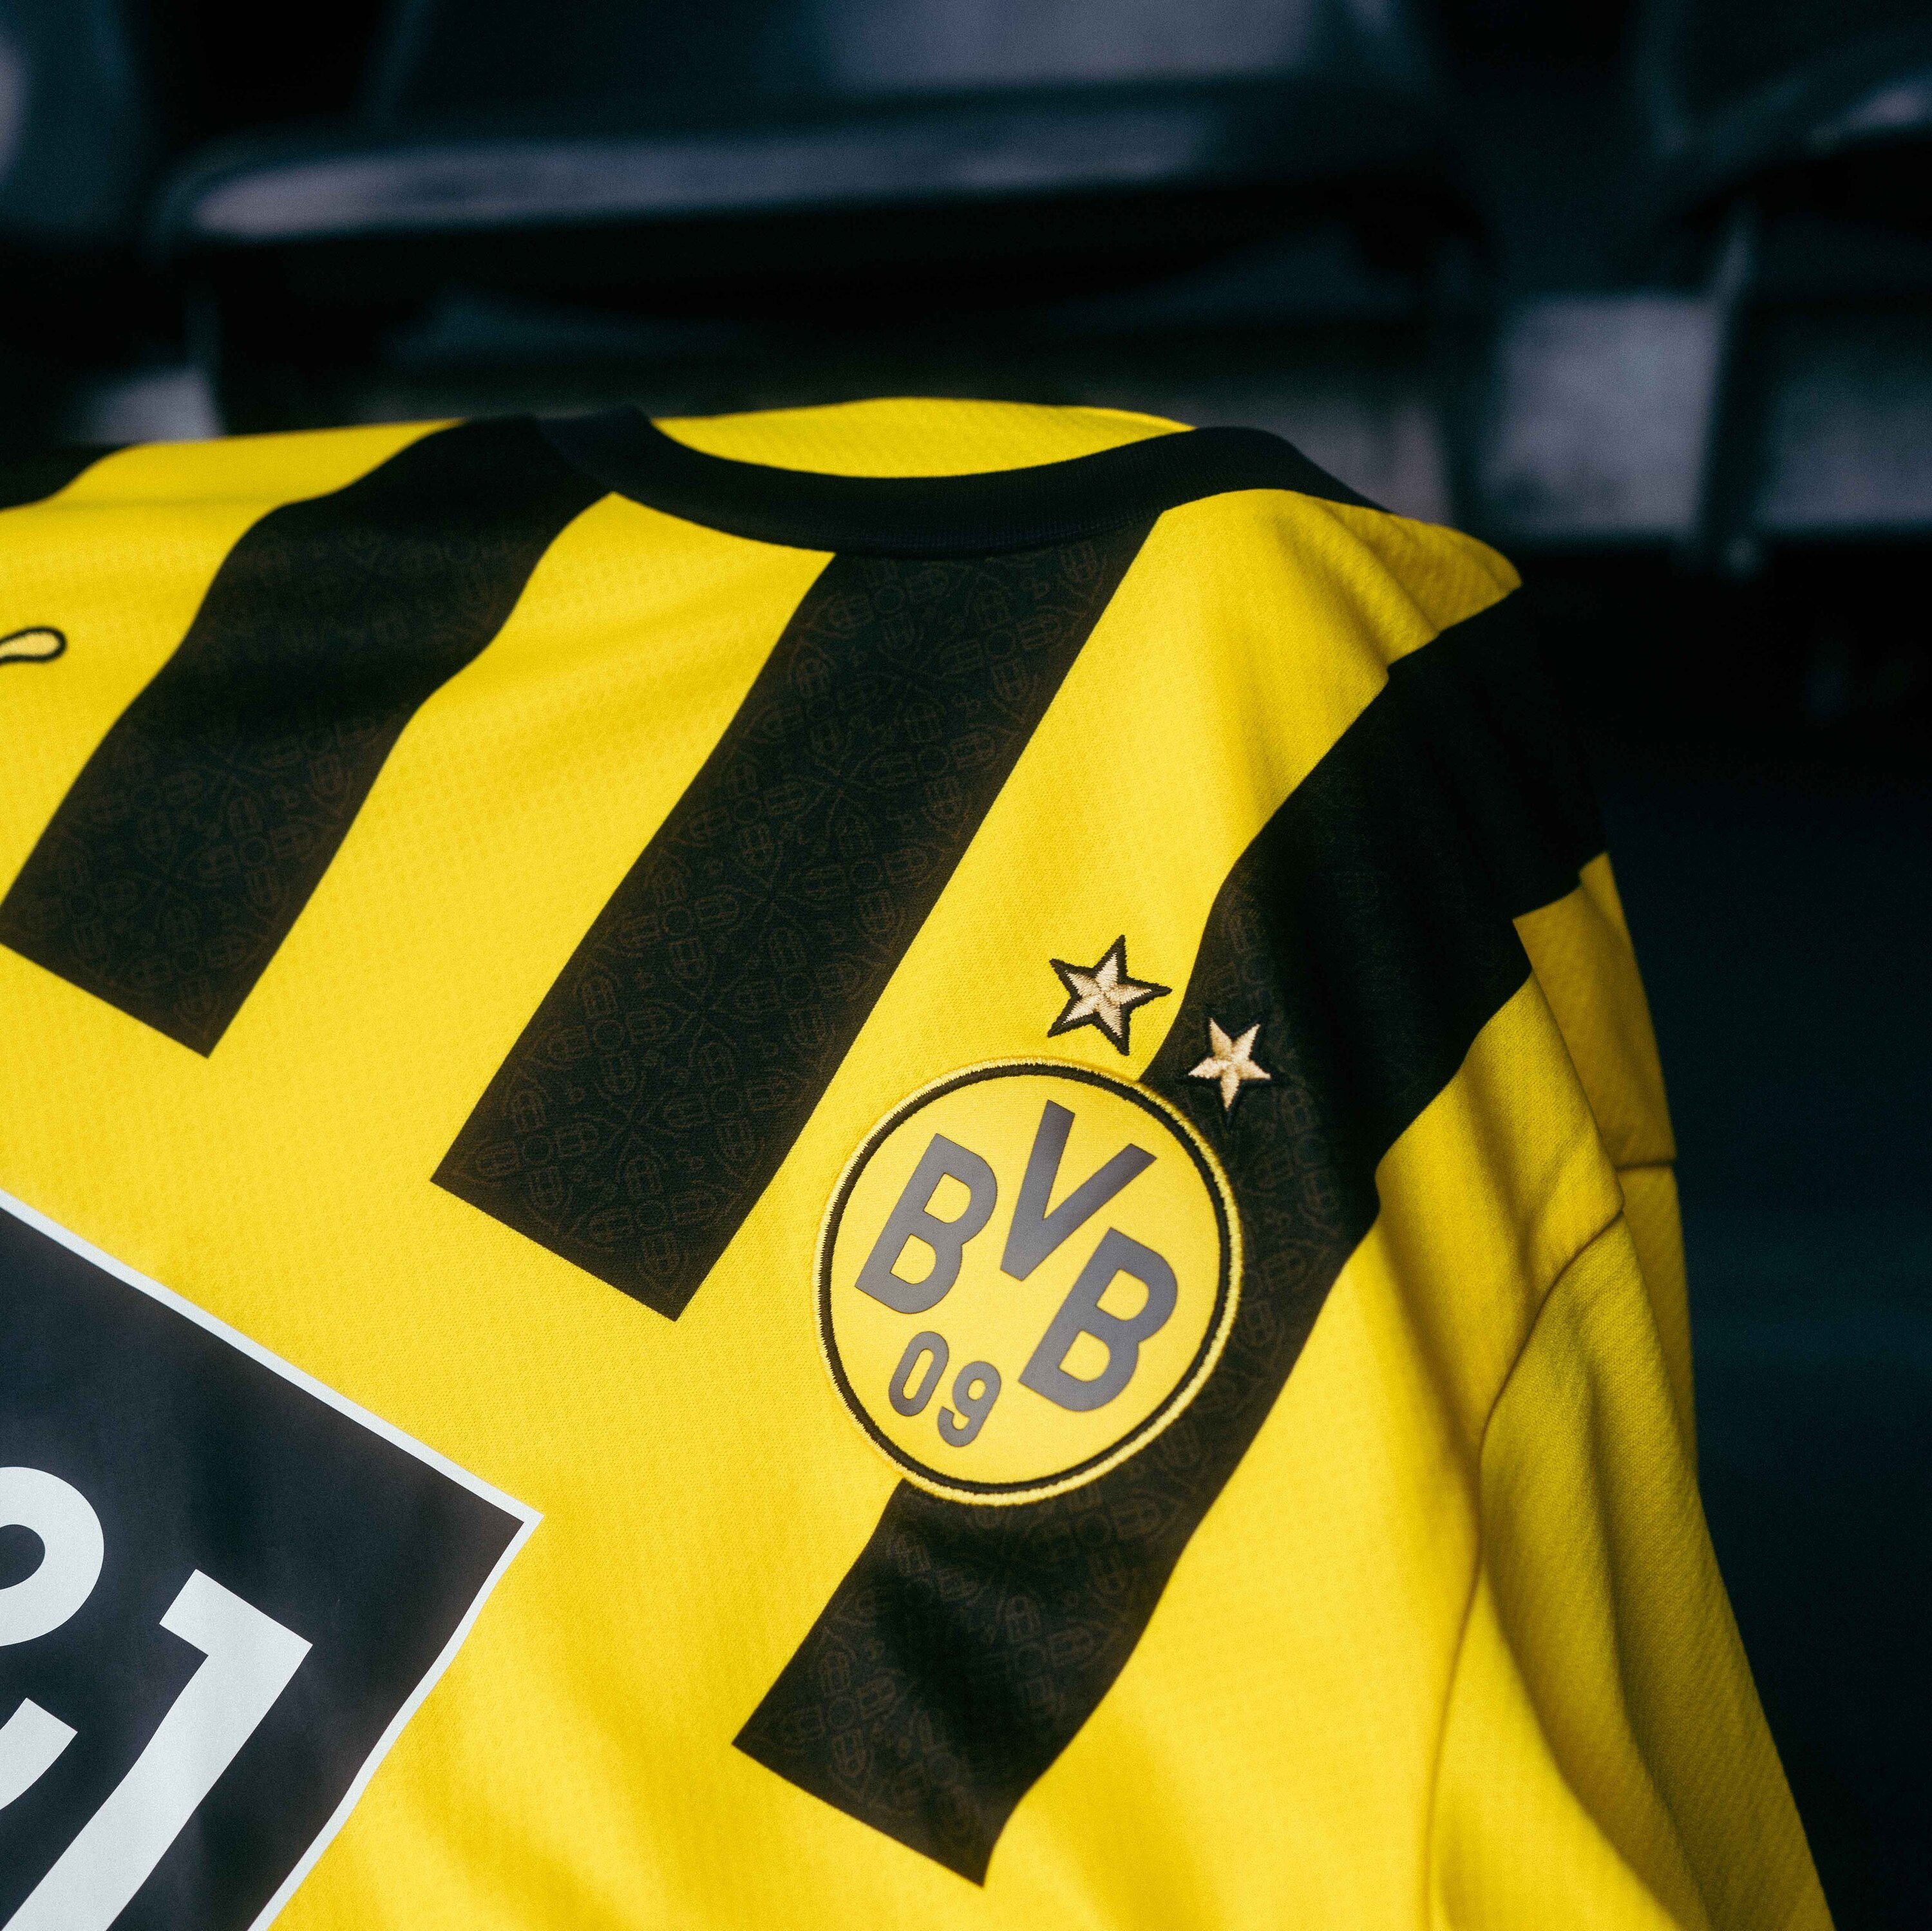 Borussia Dortmund Home Soccer Jersey Replica Mens 2022/23